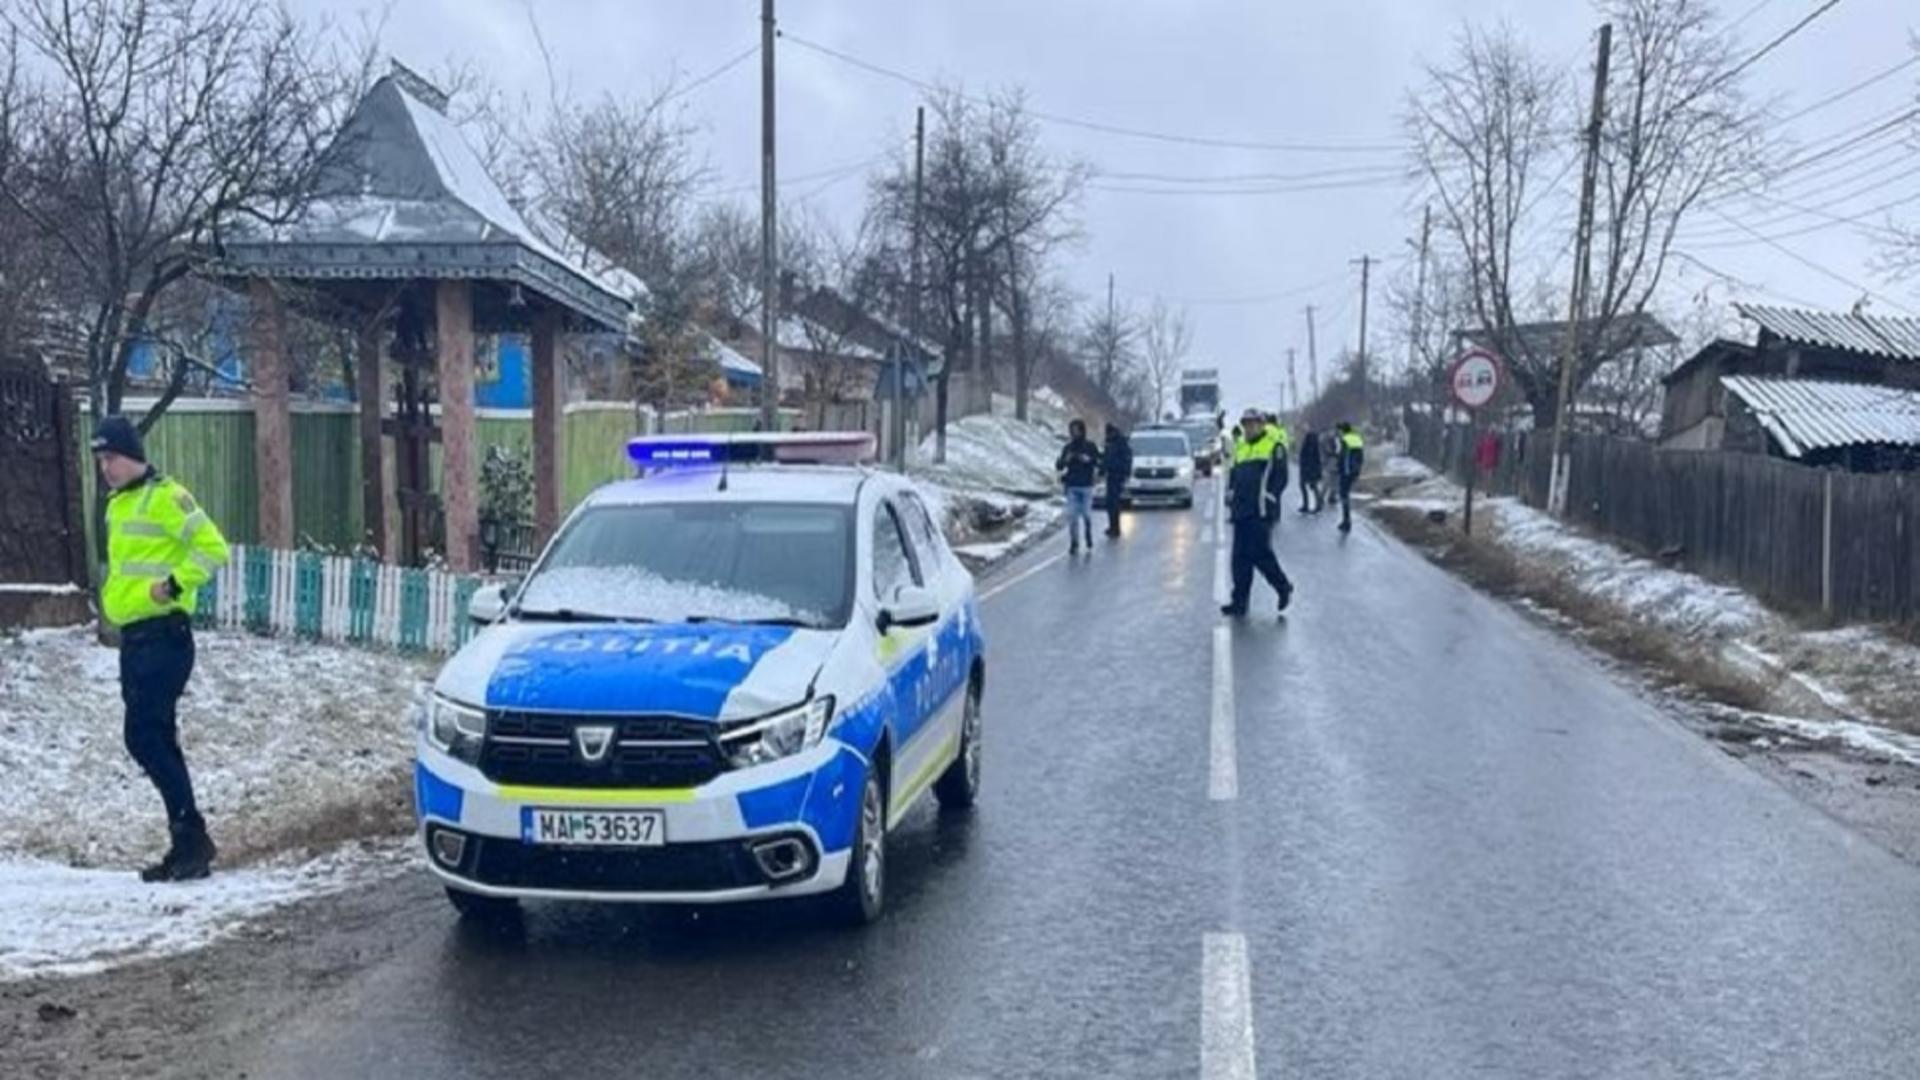 Minor de 10 ani accidentat grav de o autospecială a poliției în localitatea Bursucani, județul Galați